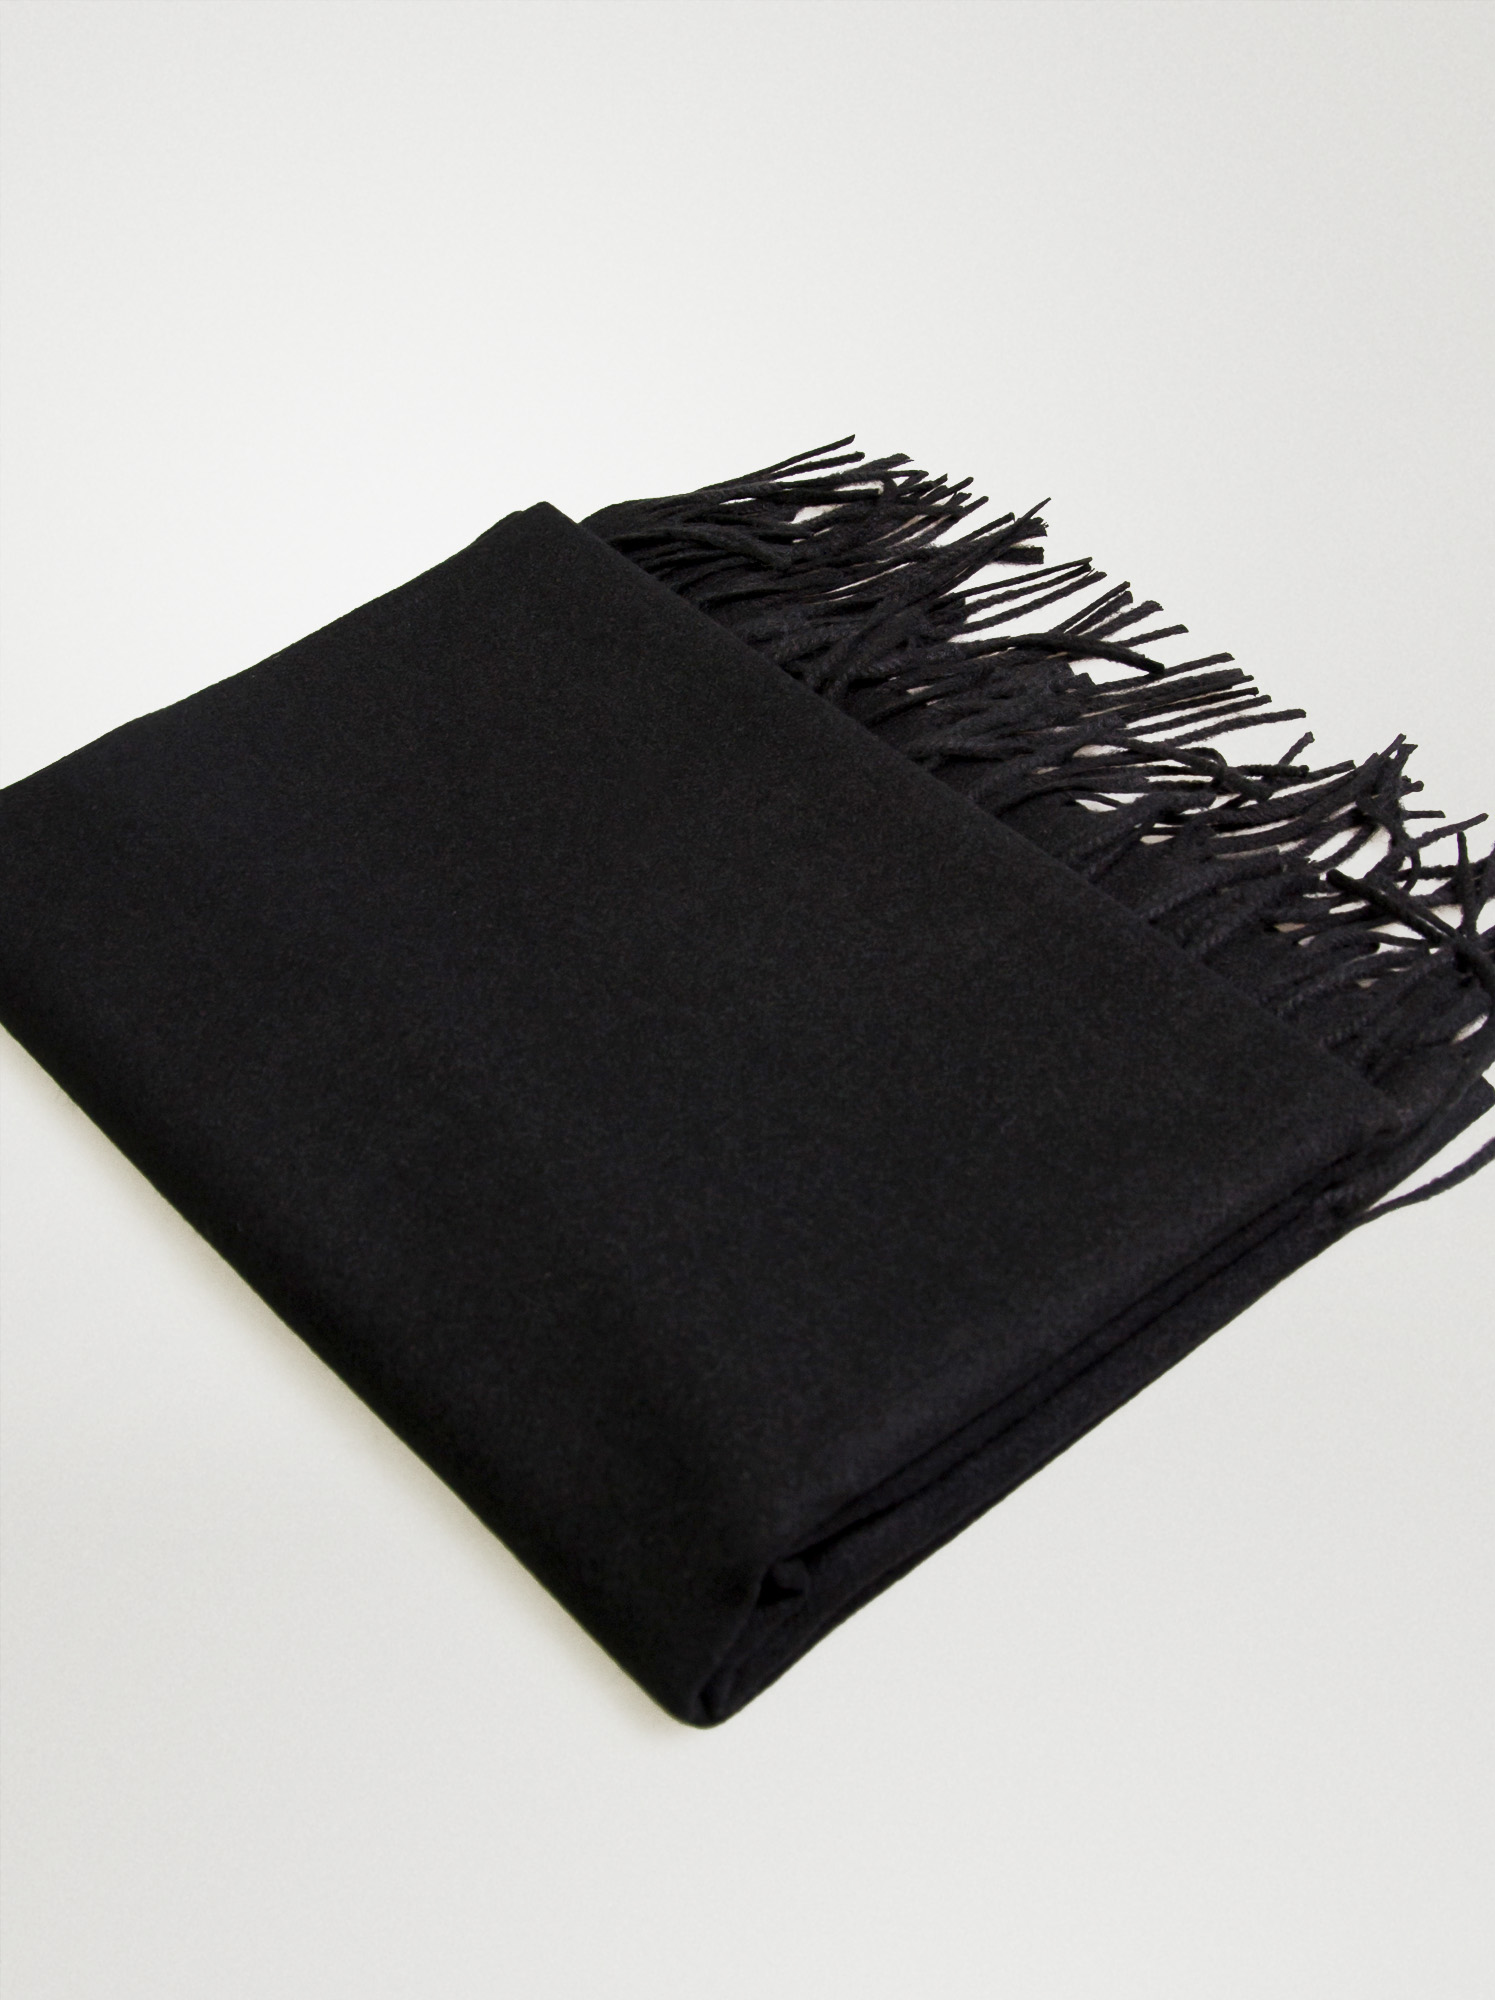 Black scarf - Allora image 2